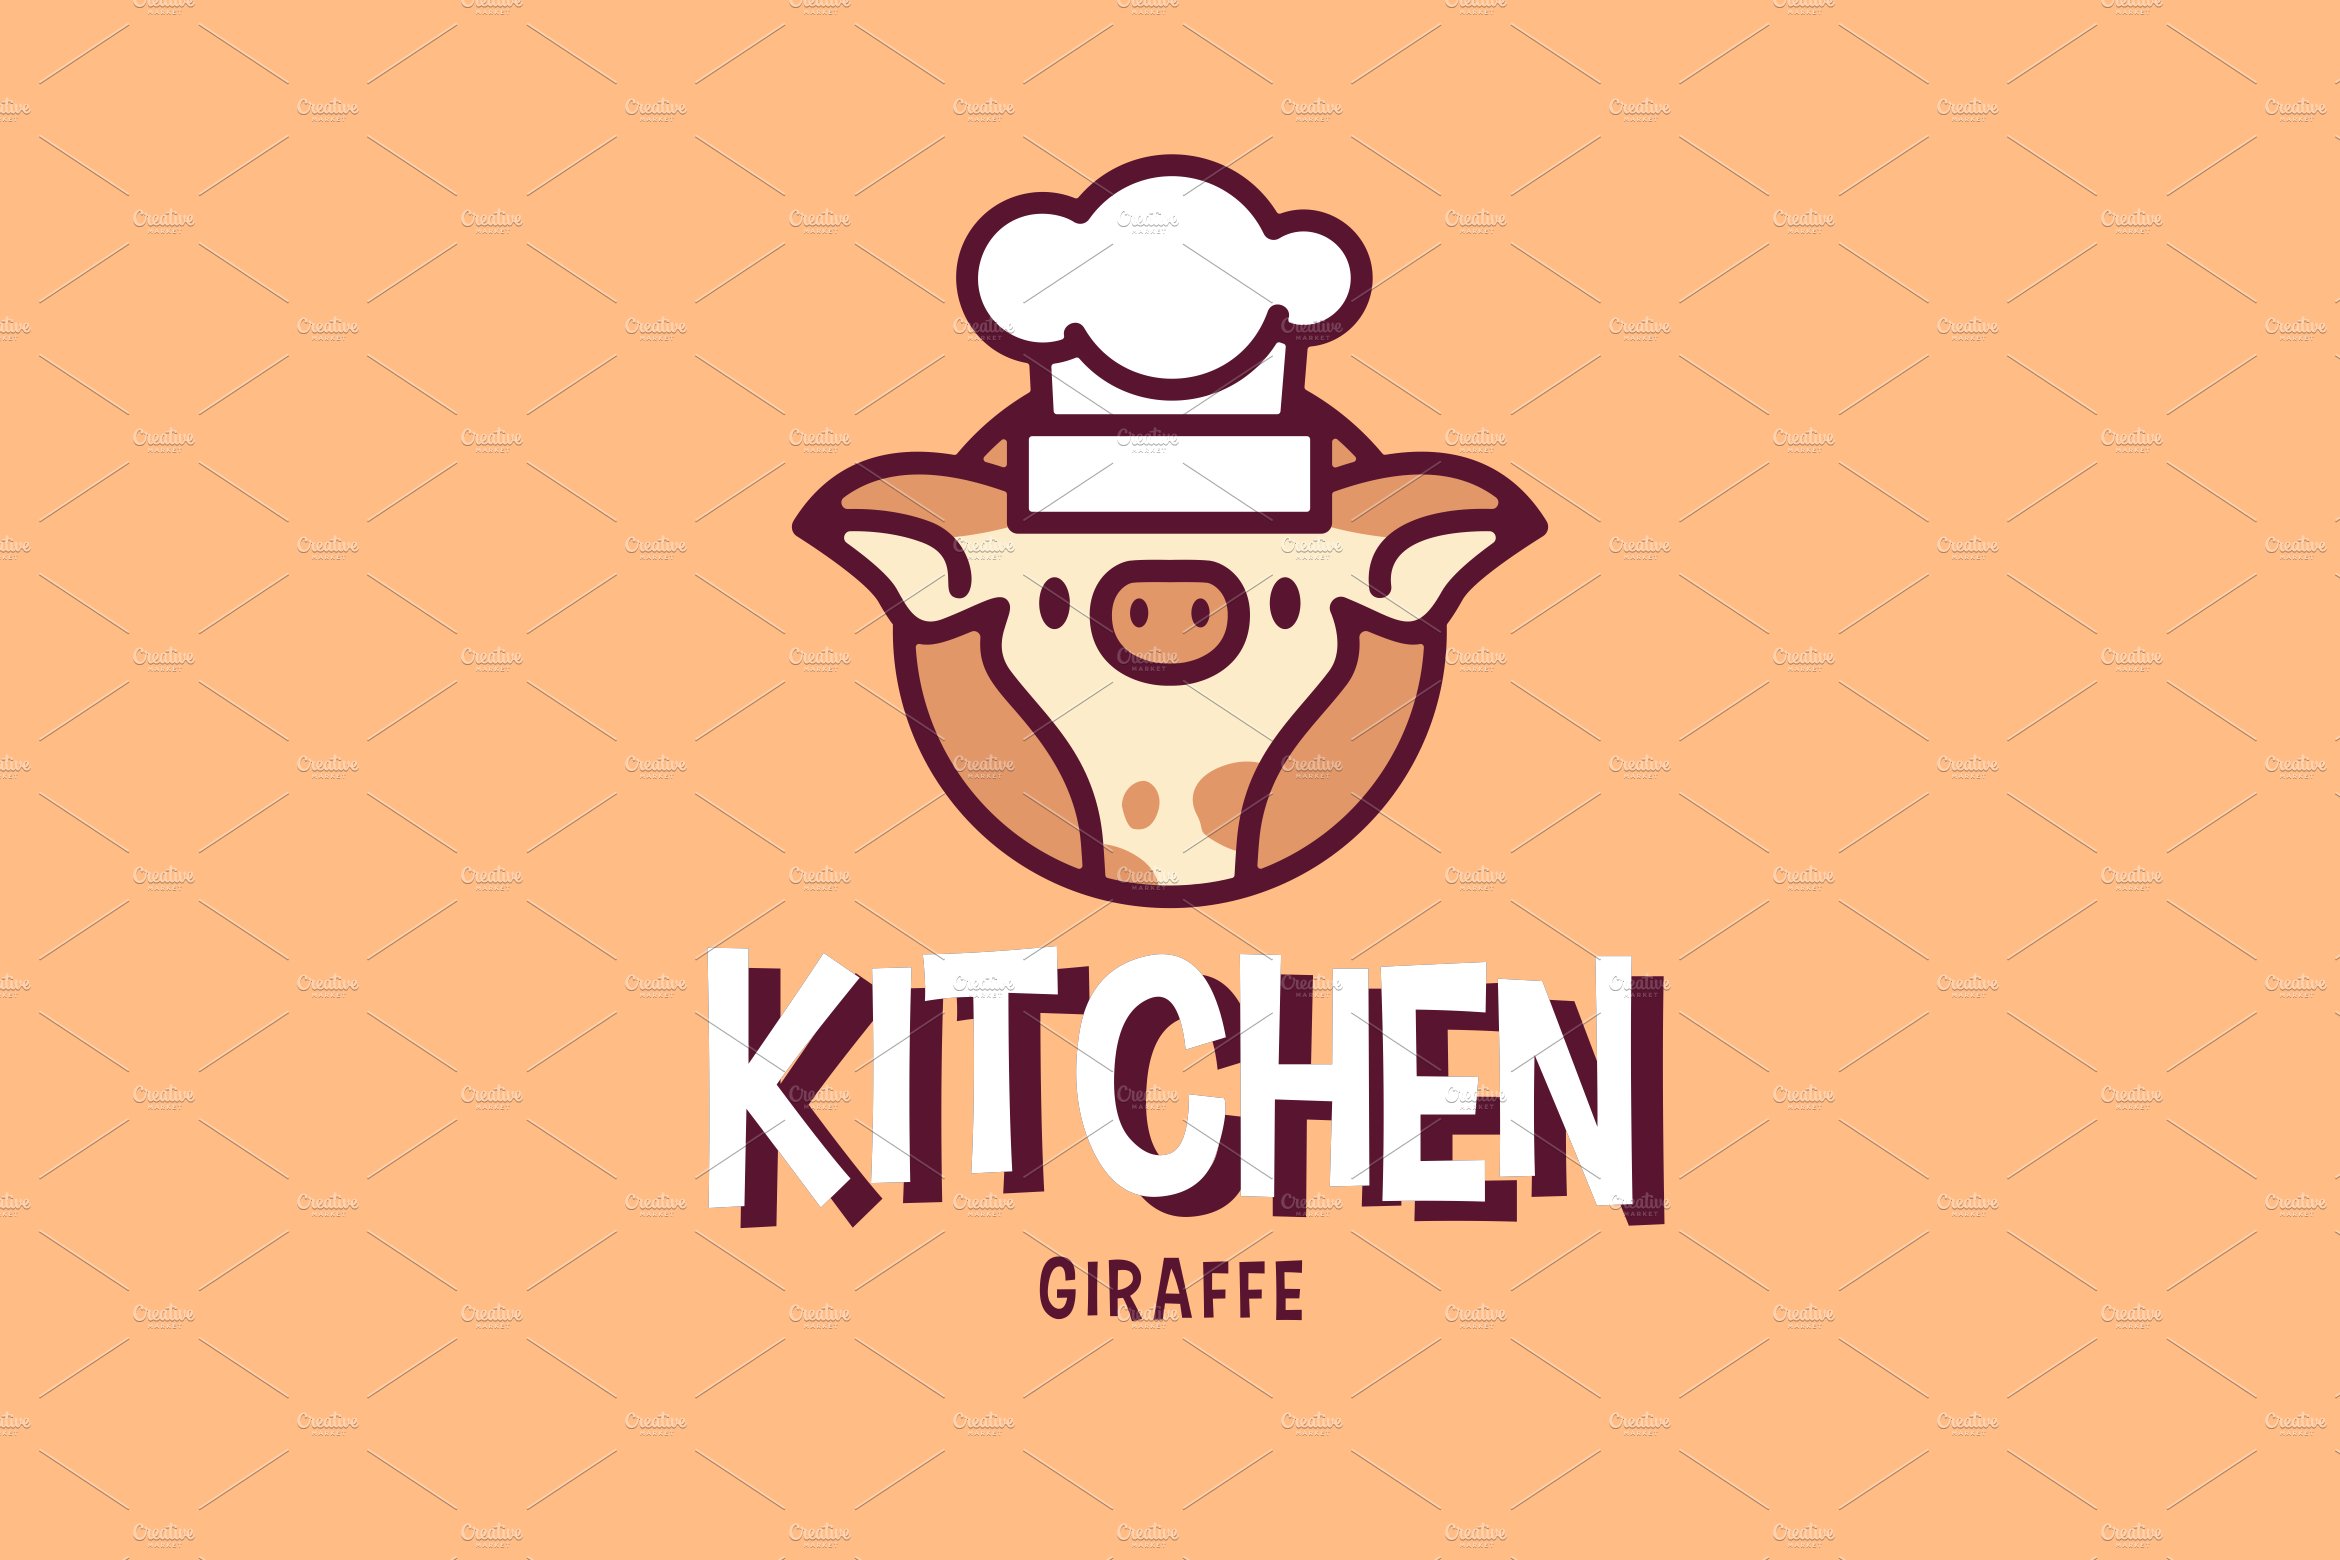 Giraffe Chef Hat Kitchen Mascot Logo cover image.